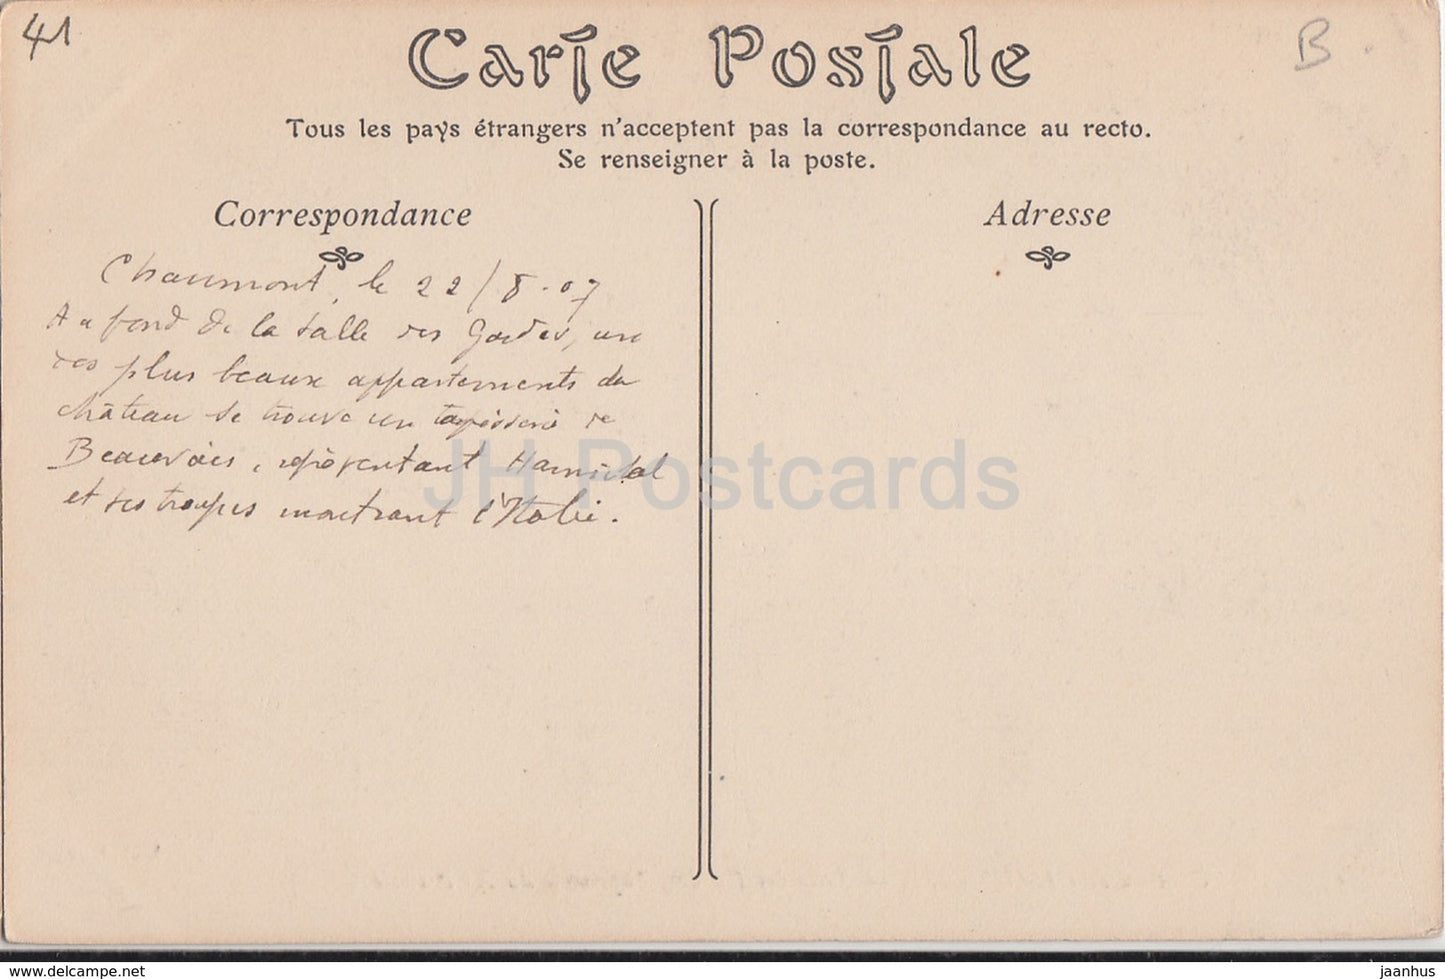 Chateau de Chaumont - Salle des Gardes - 55 - castle - old postcard - 1907 - France - used